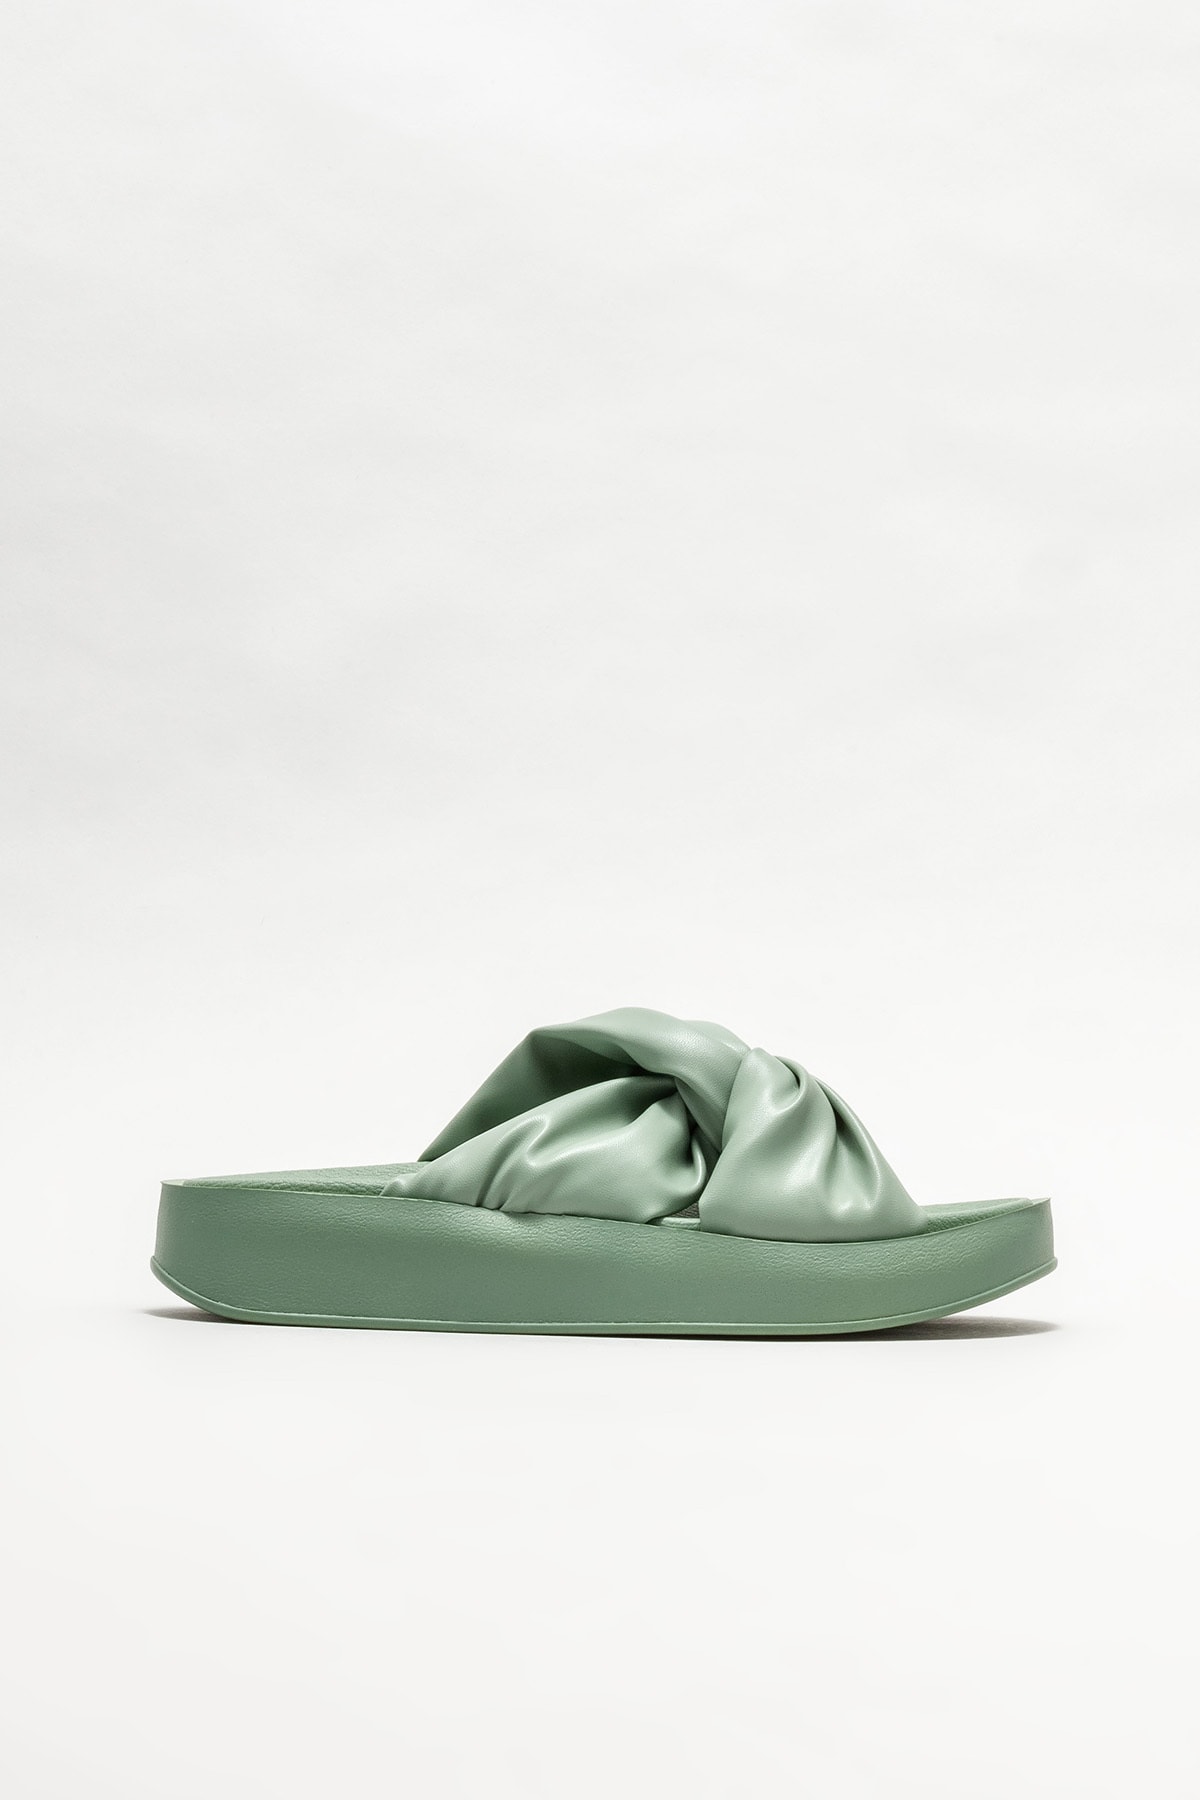 Elle Shoes Kadın Yeşil Dolgu Topuklu Terlik NE7378